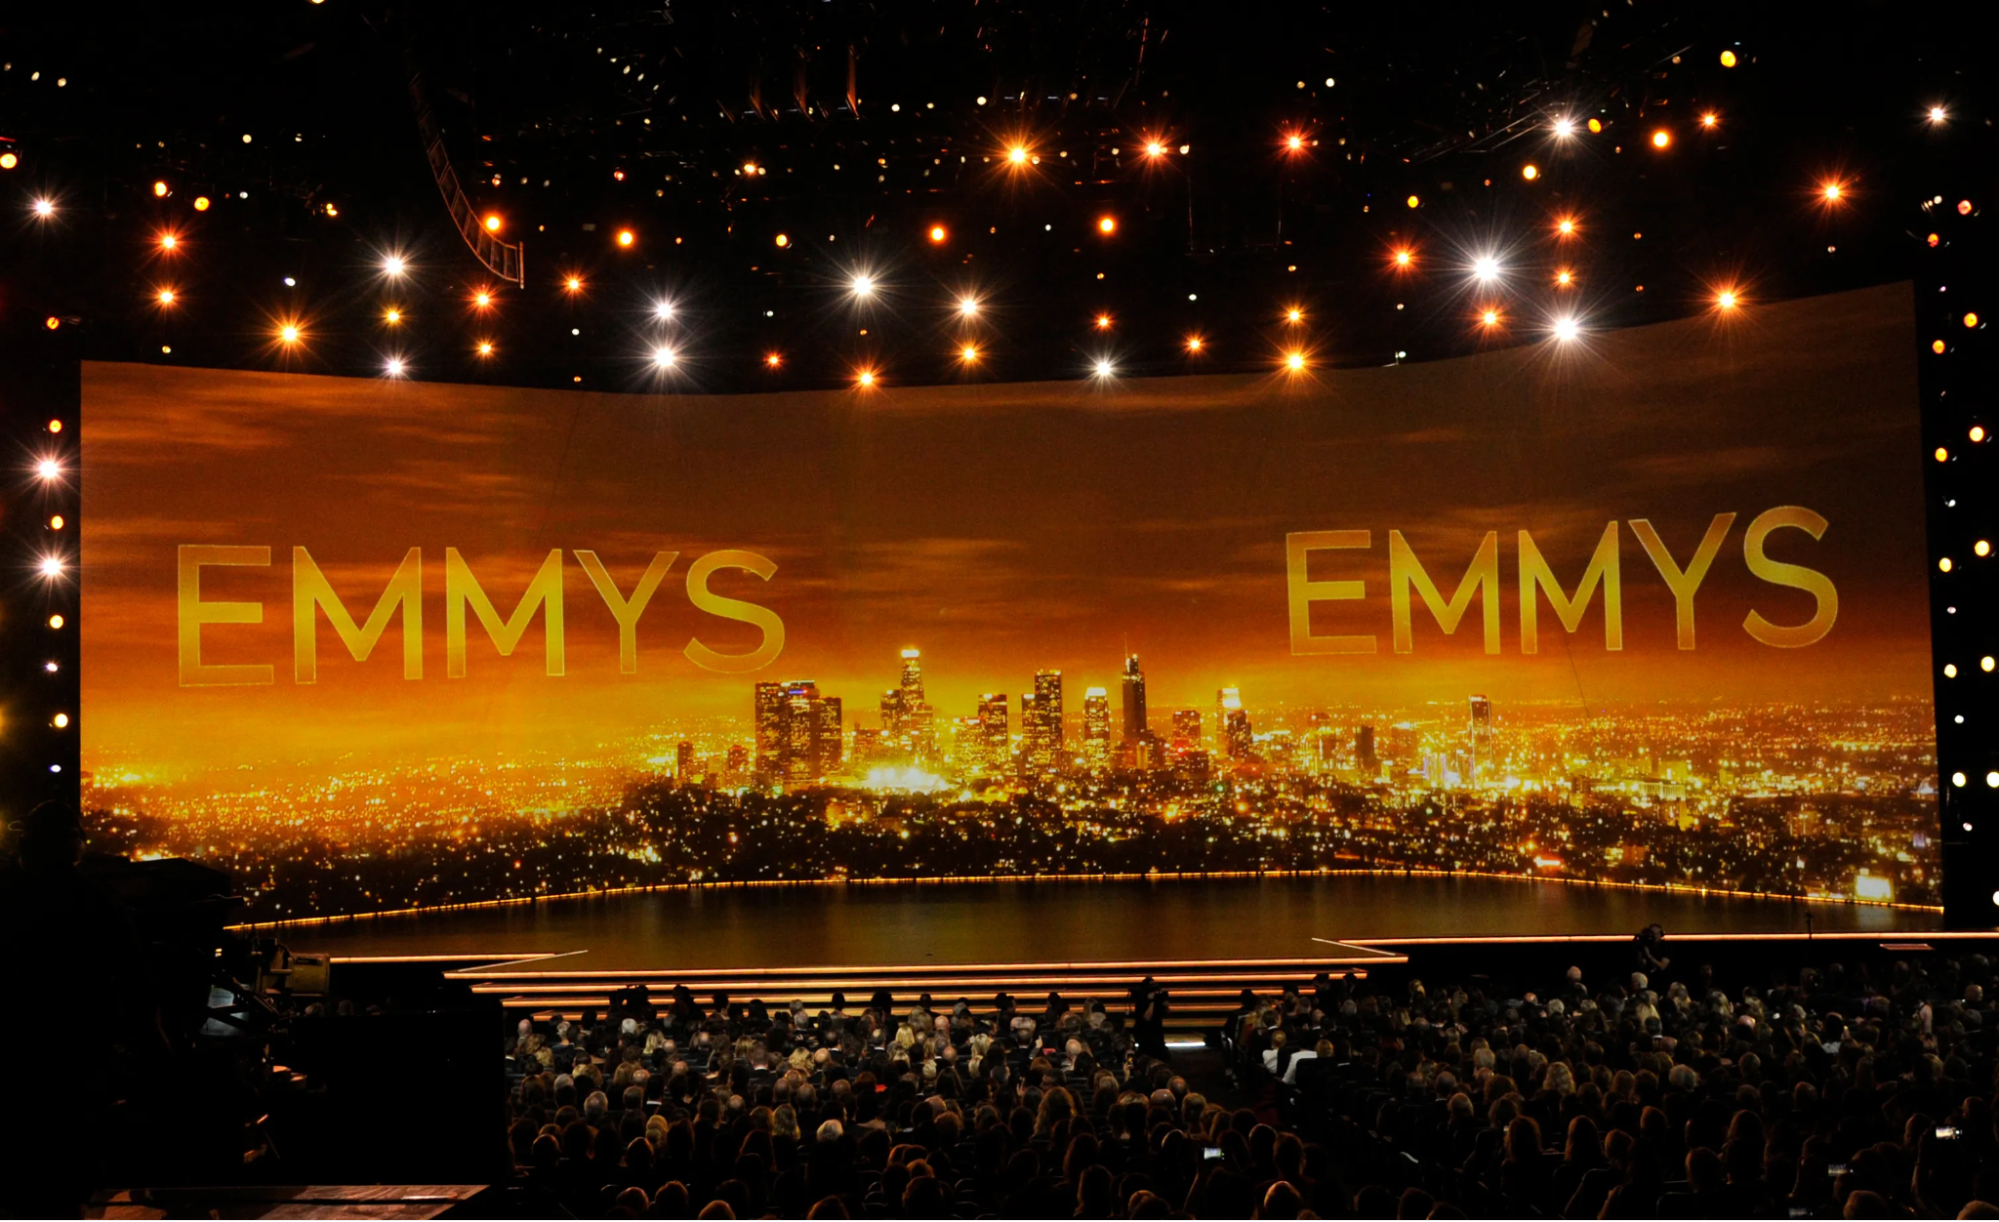 Foto do palco do Emmy de 2021. O cenário da premiação é composto por um telão que mostra os prédios de uma cidade, com um pôr do sol alaranjado se misturando ao letreiro “Emmys”, da mesma cor. Além disso, na plateia há várias pessoas, olhando para o palco.